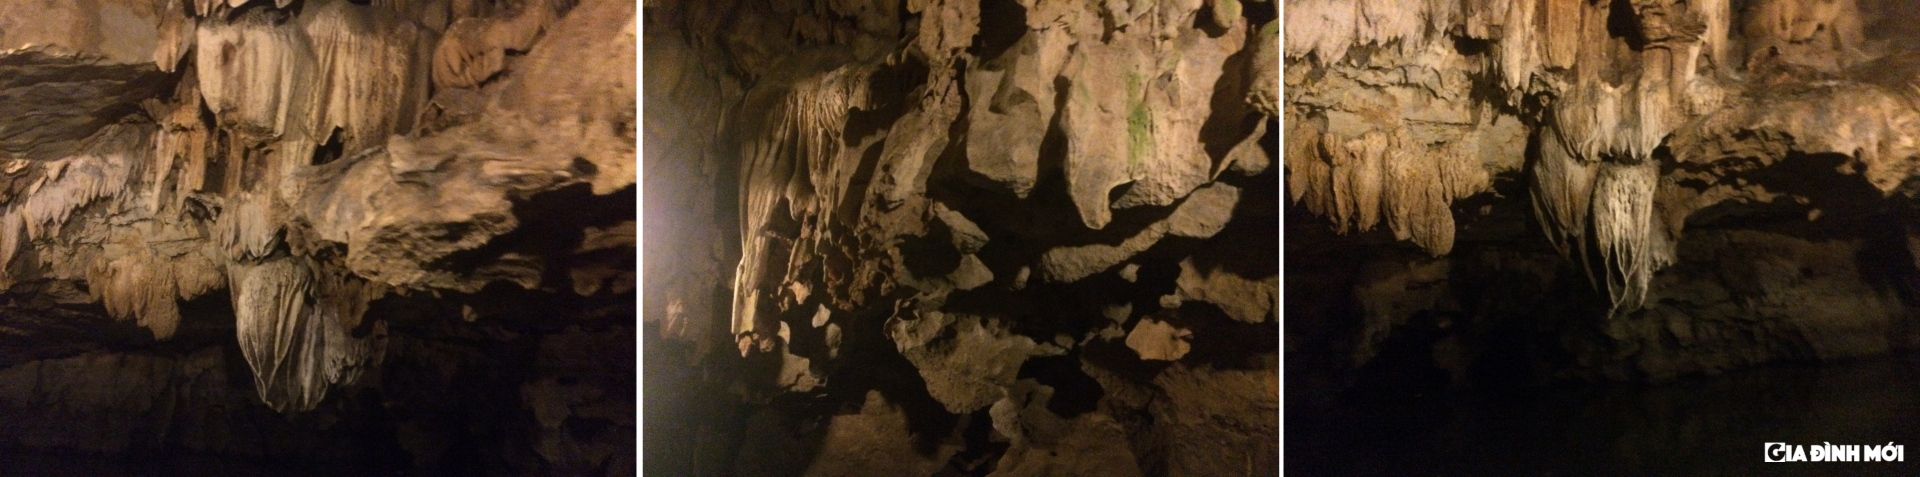 Khung cảnh bên trong hang động